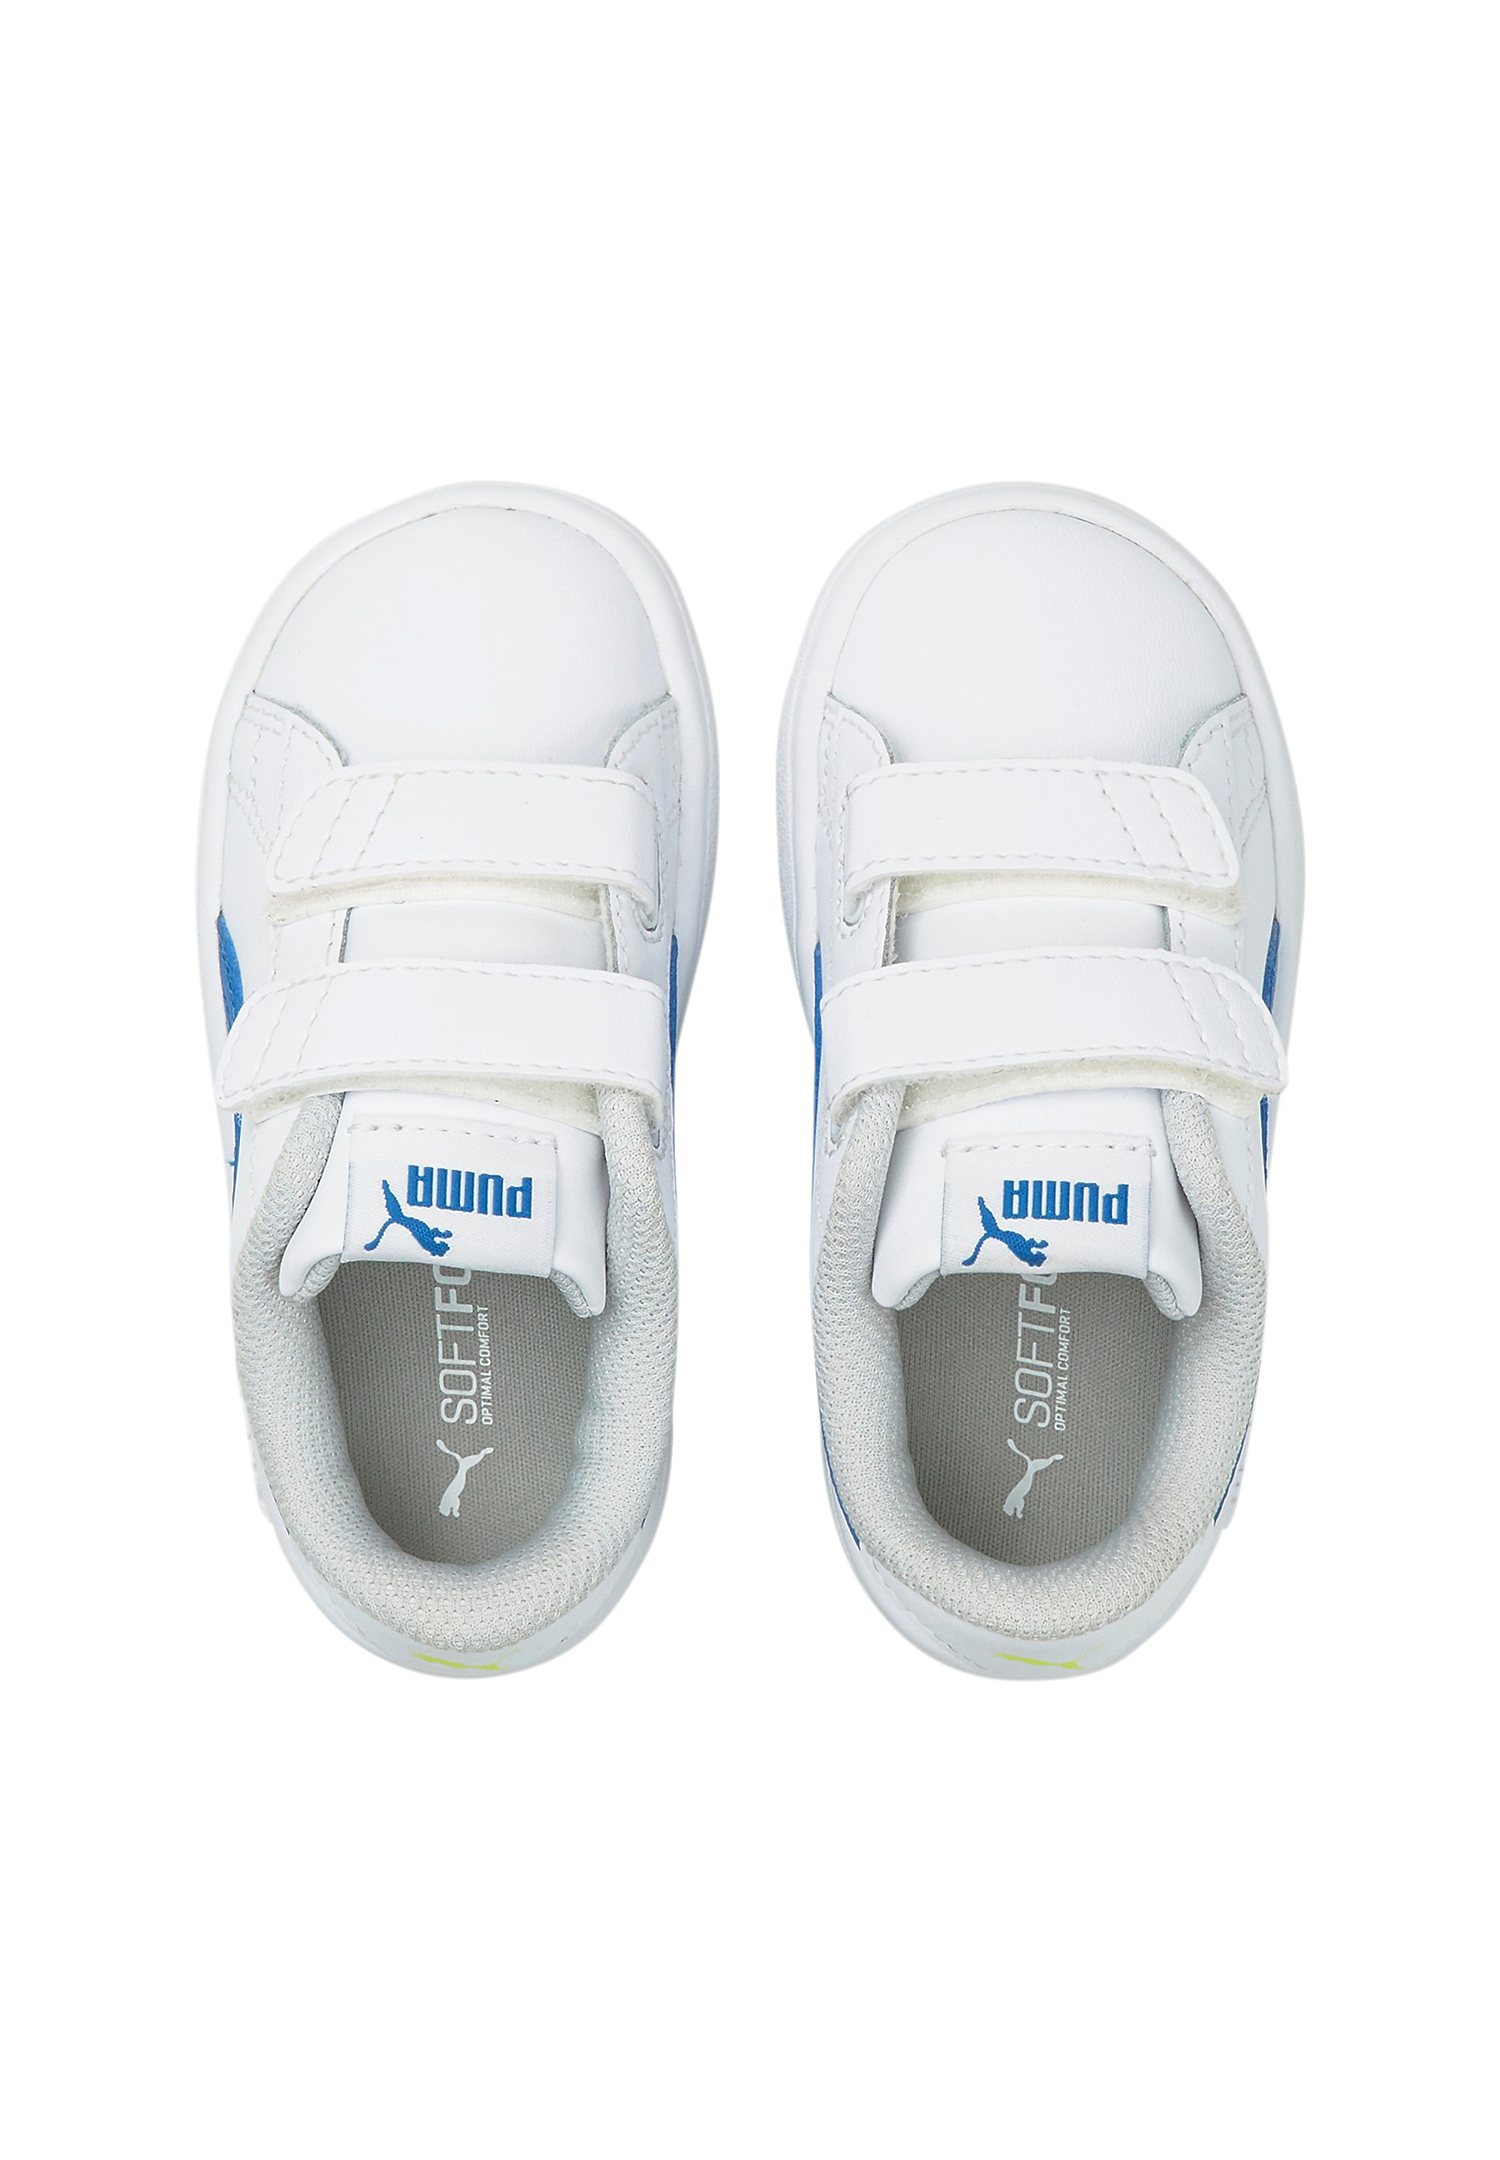 PUMA Smash v2 L V INF Kids Sneaker Schuhe weiss 365174 33